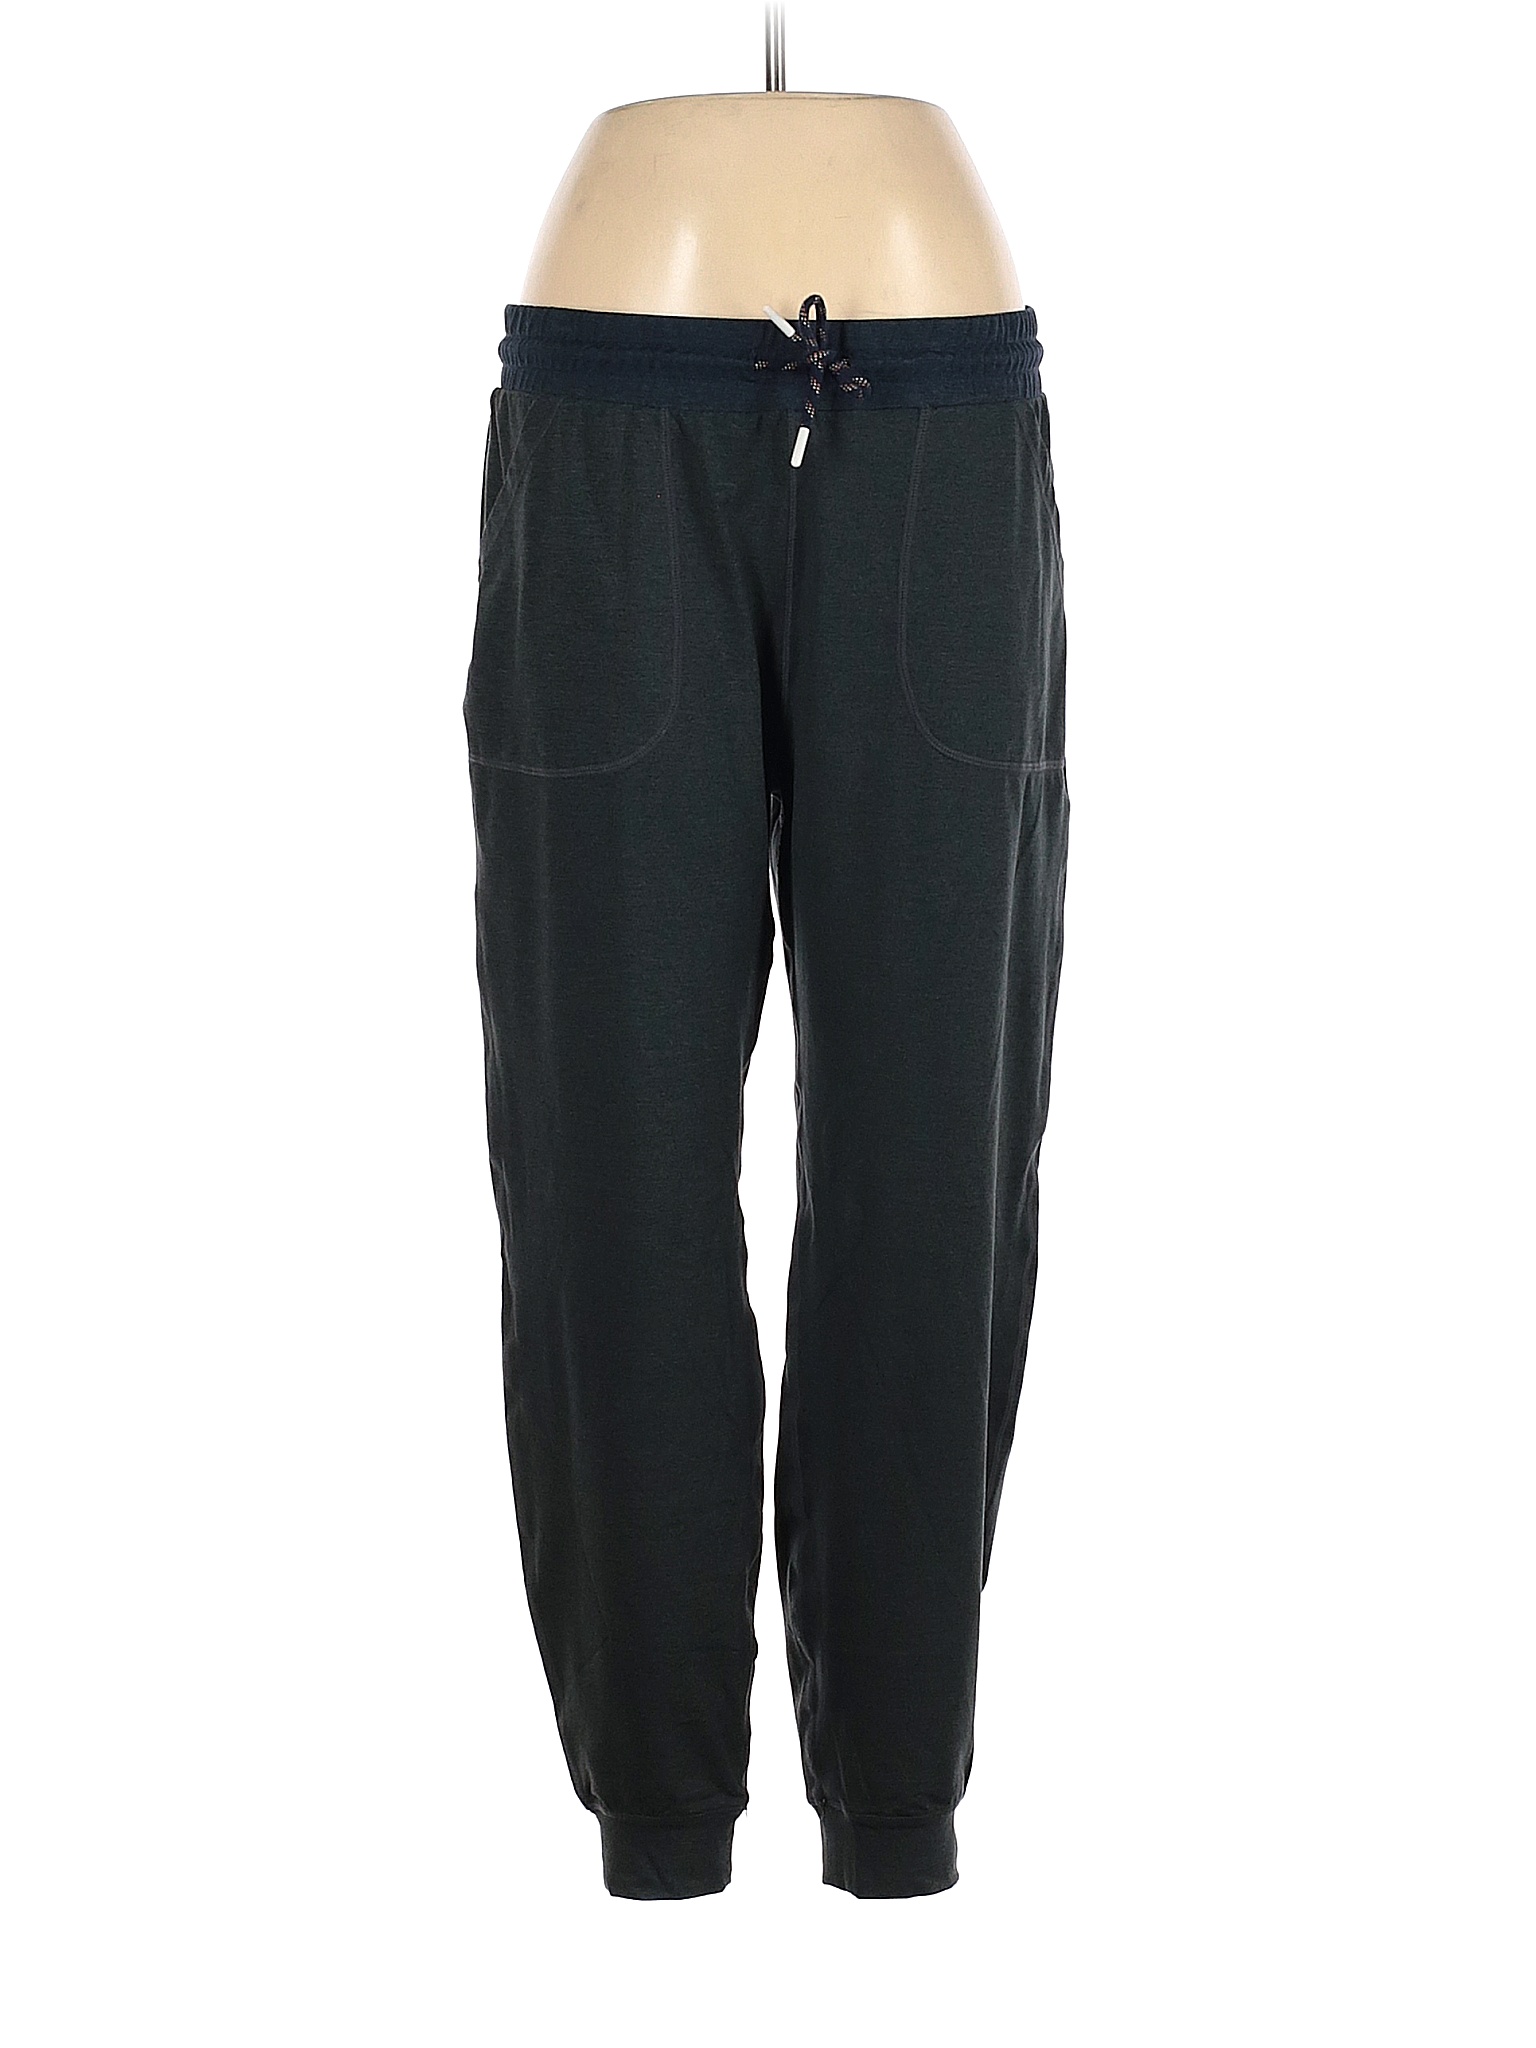 KIRKLAND Signature Solid Black Green Sweatpants Size XL - 42% off | thredUP